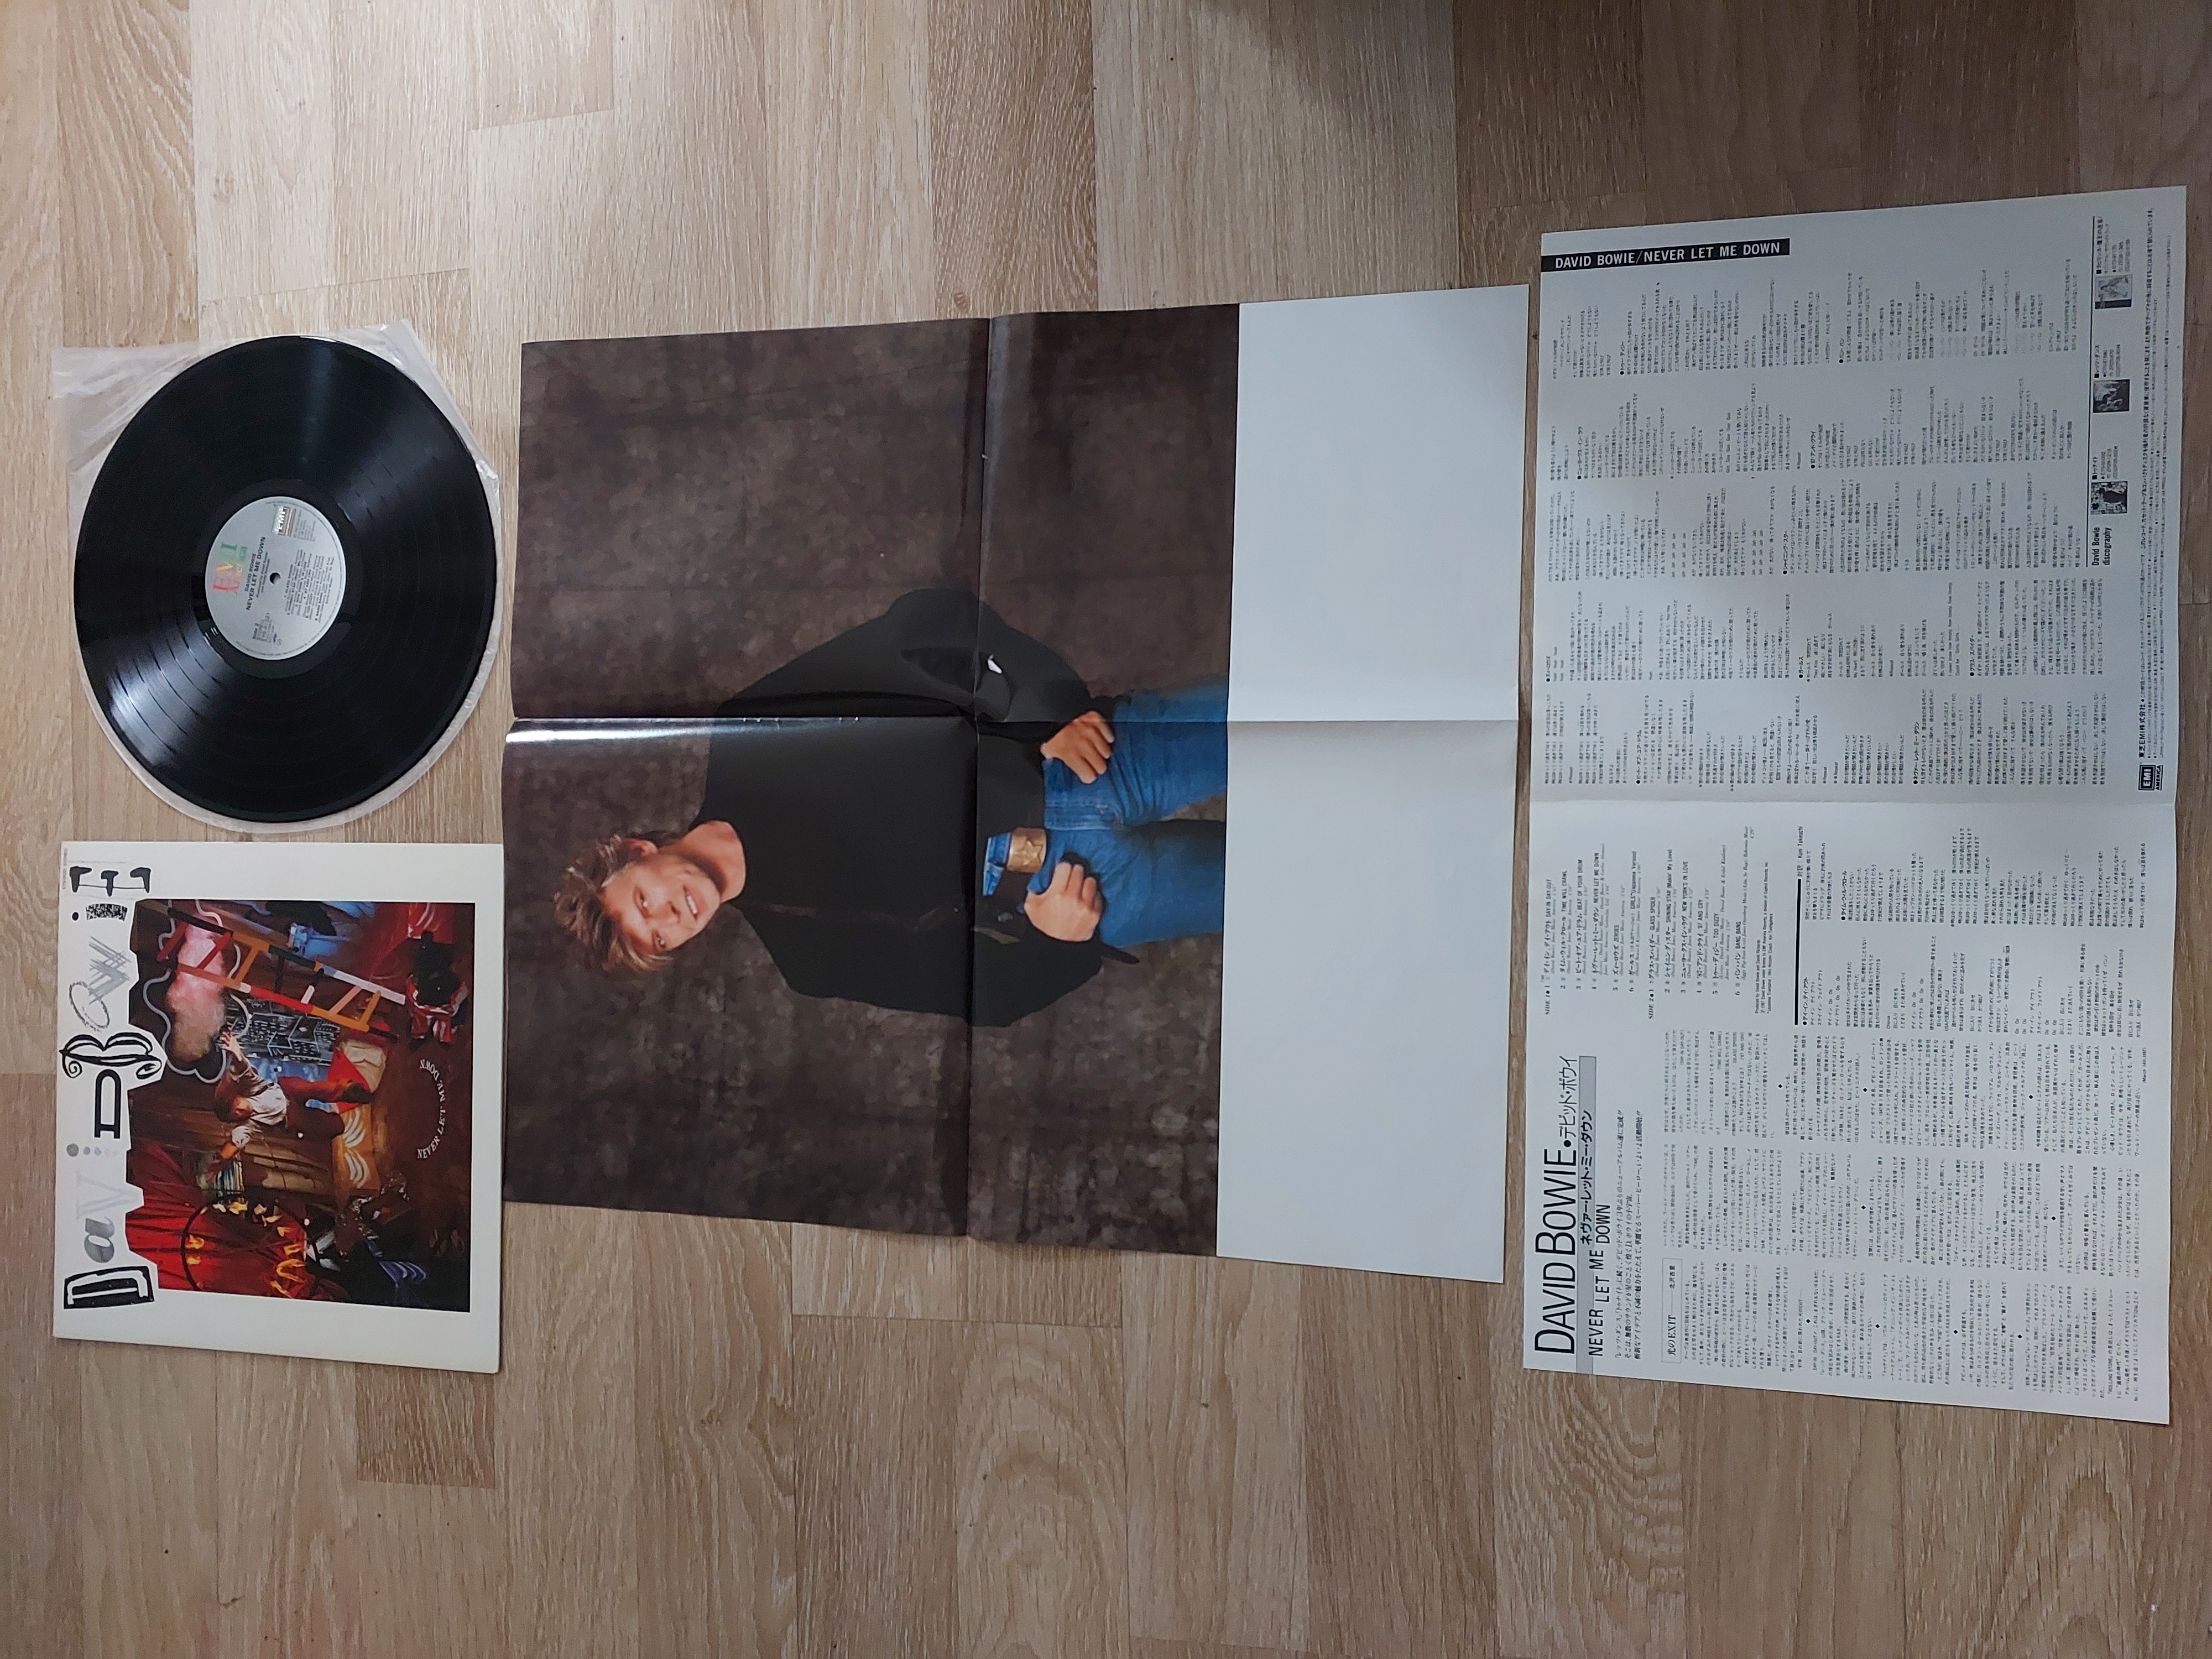 David Bowie – Never Let Me Down - 1987 Japonya Basım 33 Lük Plak LP Albüm